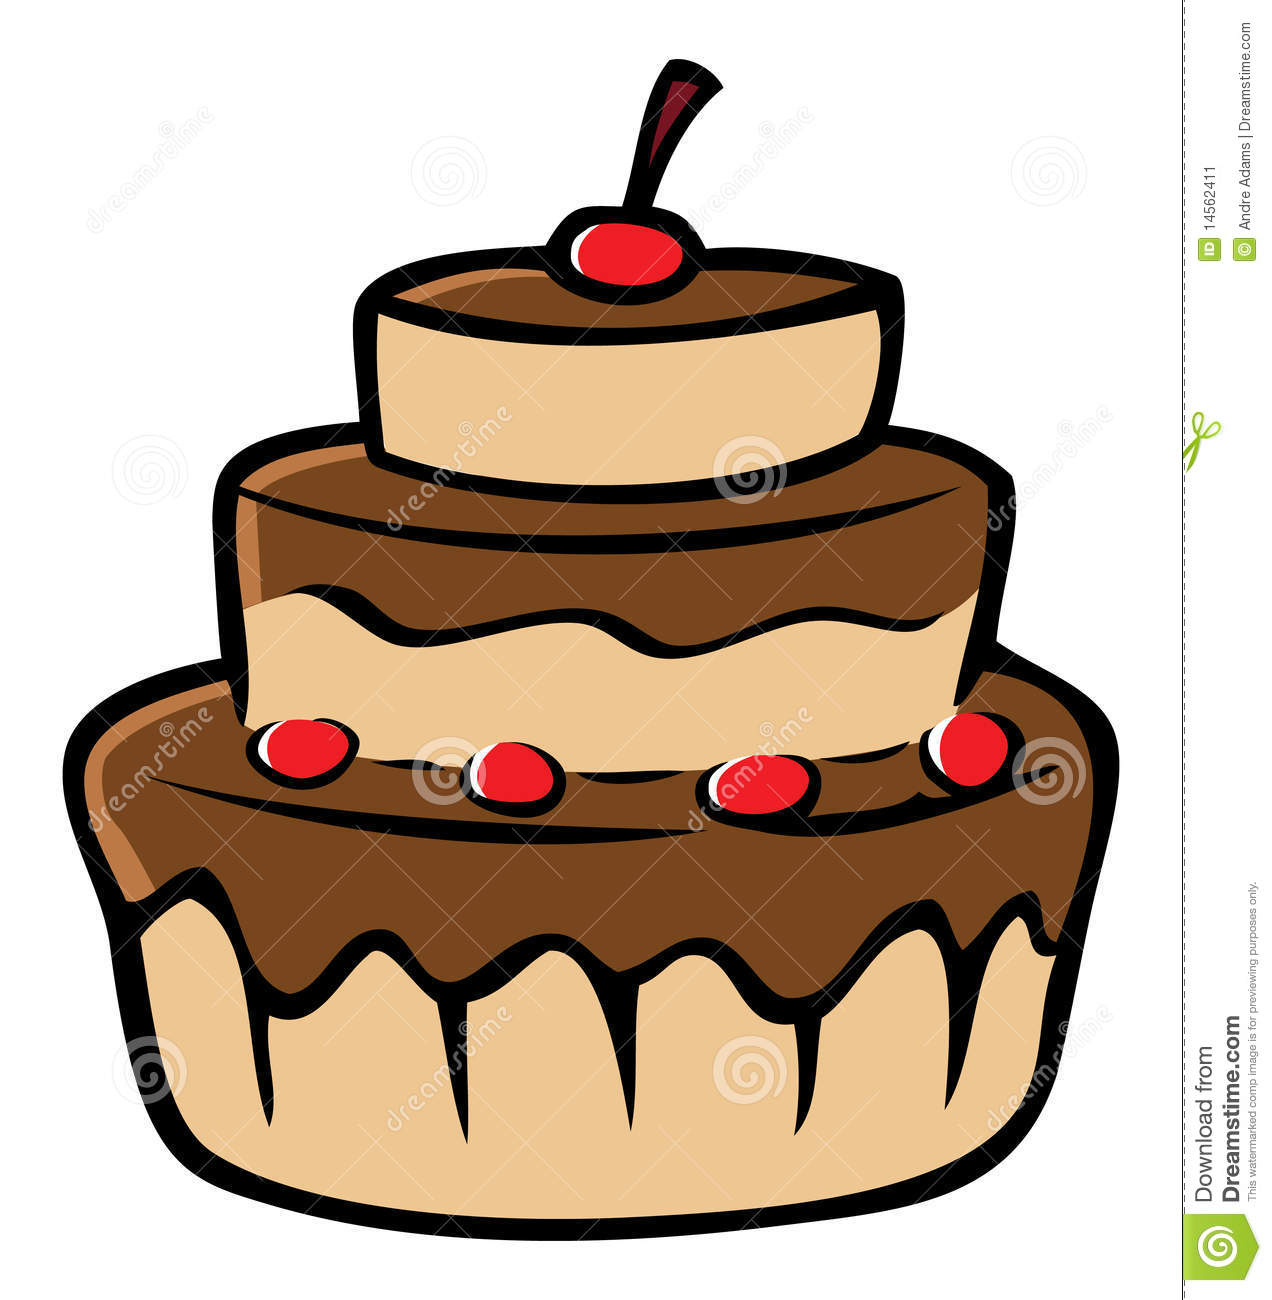 Cerises De Gâteau De Chocolat Illustration De Vecteur dedans Dessins De Gateaux 